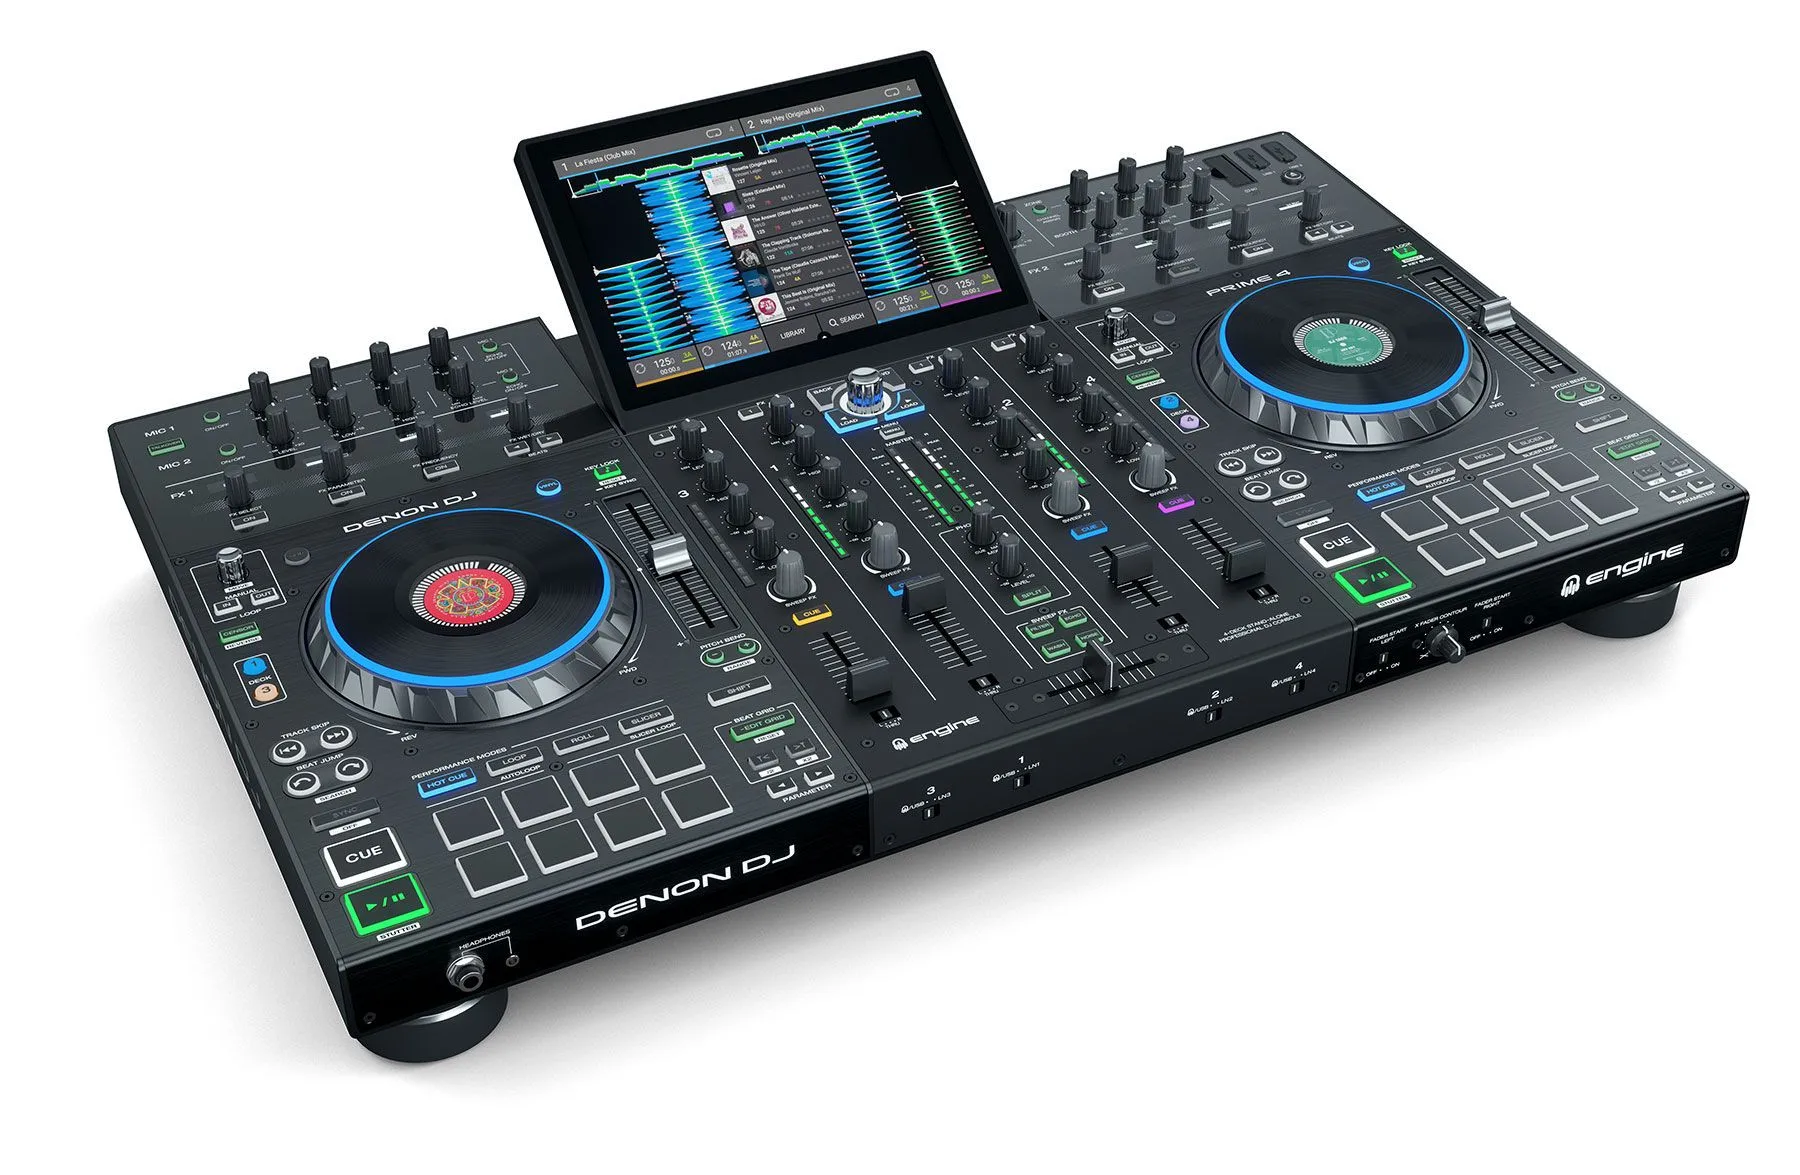 

Лидер продаж ON Prime 4 4-дельная автономная система DJ-контроллера с сенсорным экраном 10 дюймов